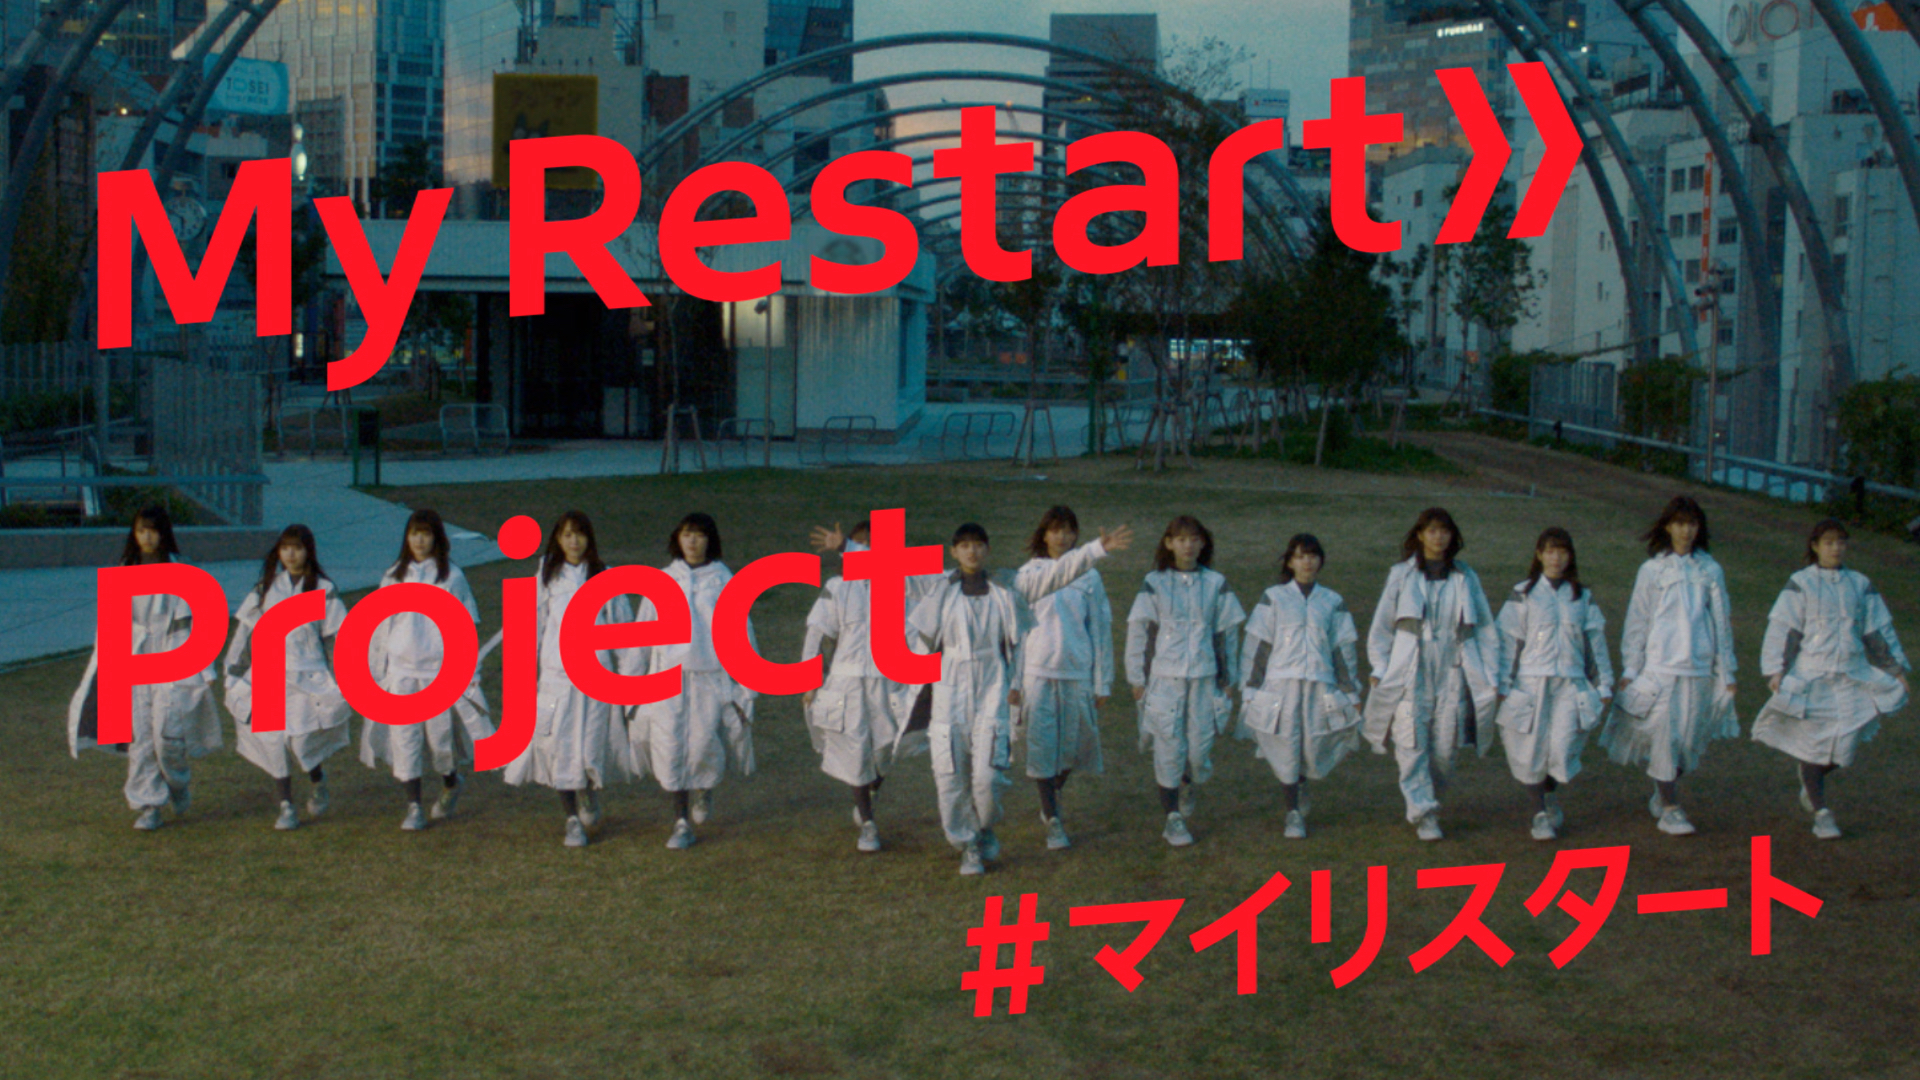 メルカリ 欅坂46から新たに生まれ変わった櫻坂46と共に 新たなスタートをきる人を応援する My Restart Project キャンペーンを開始 株式会社メルカリ